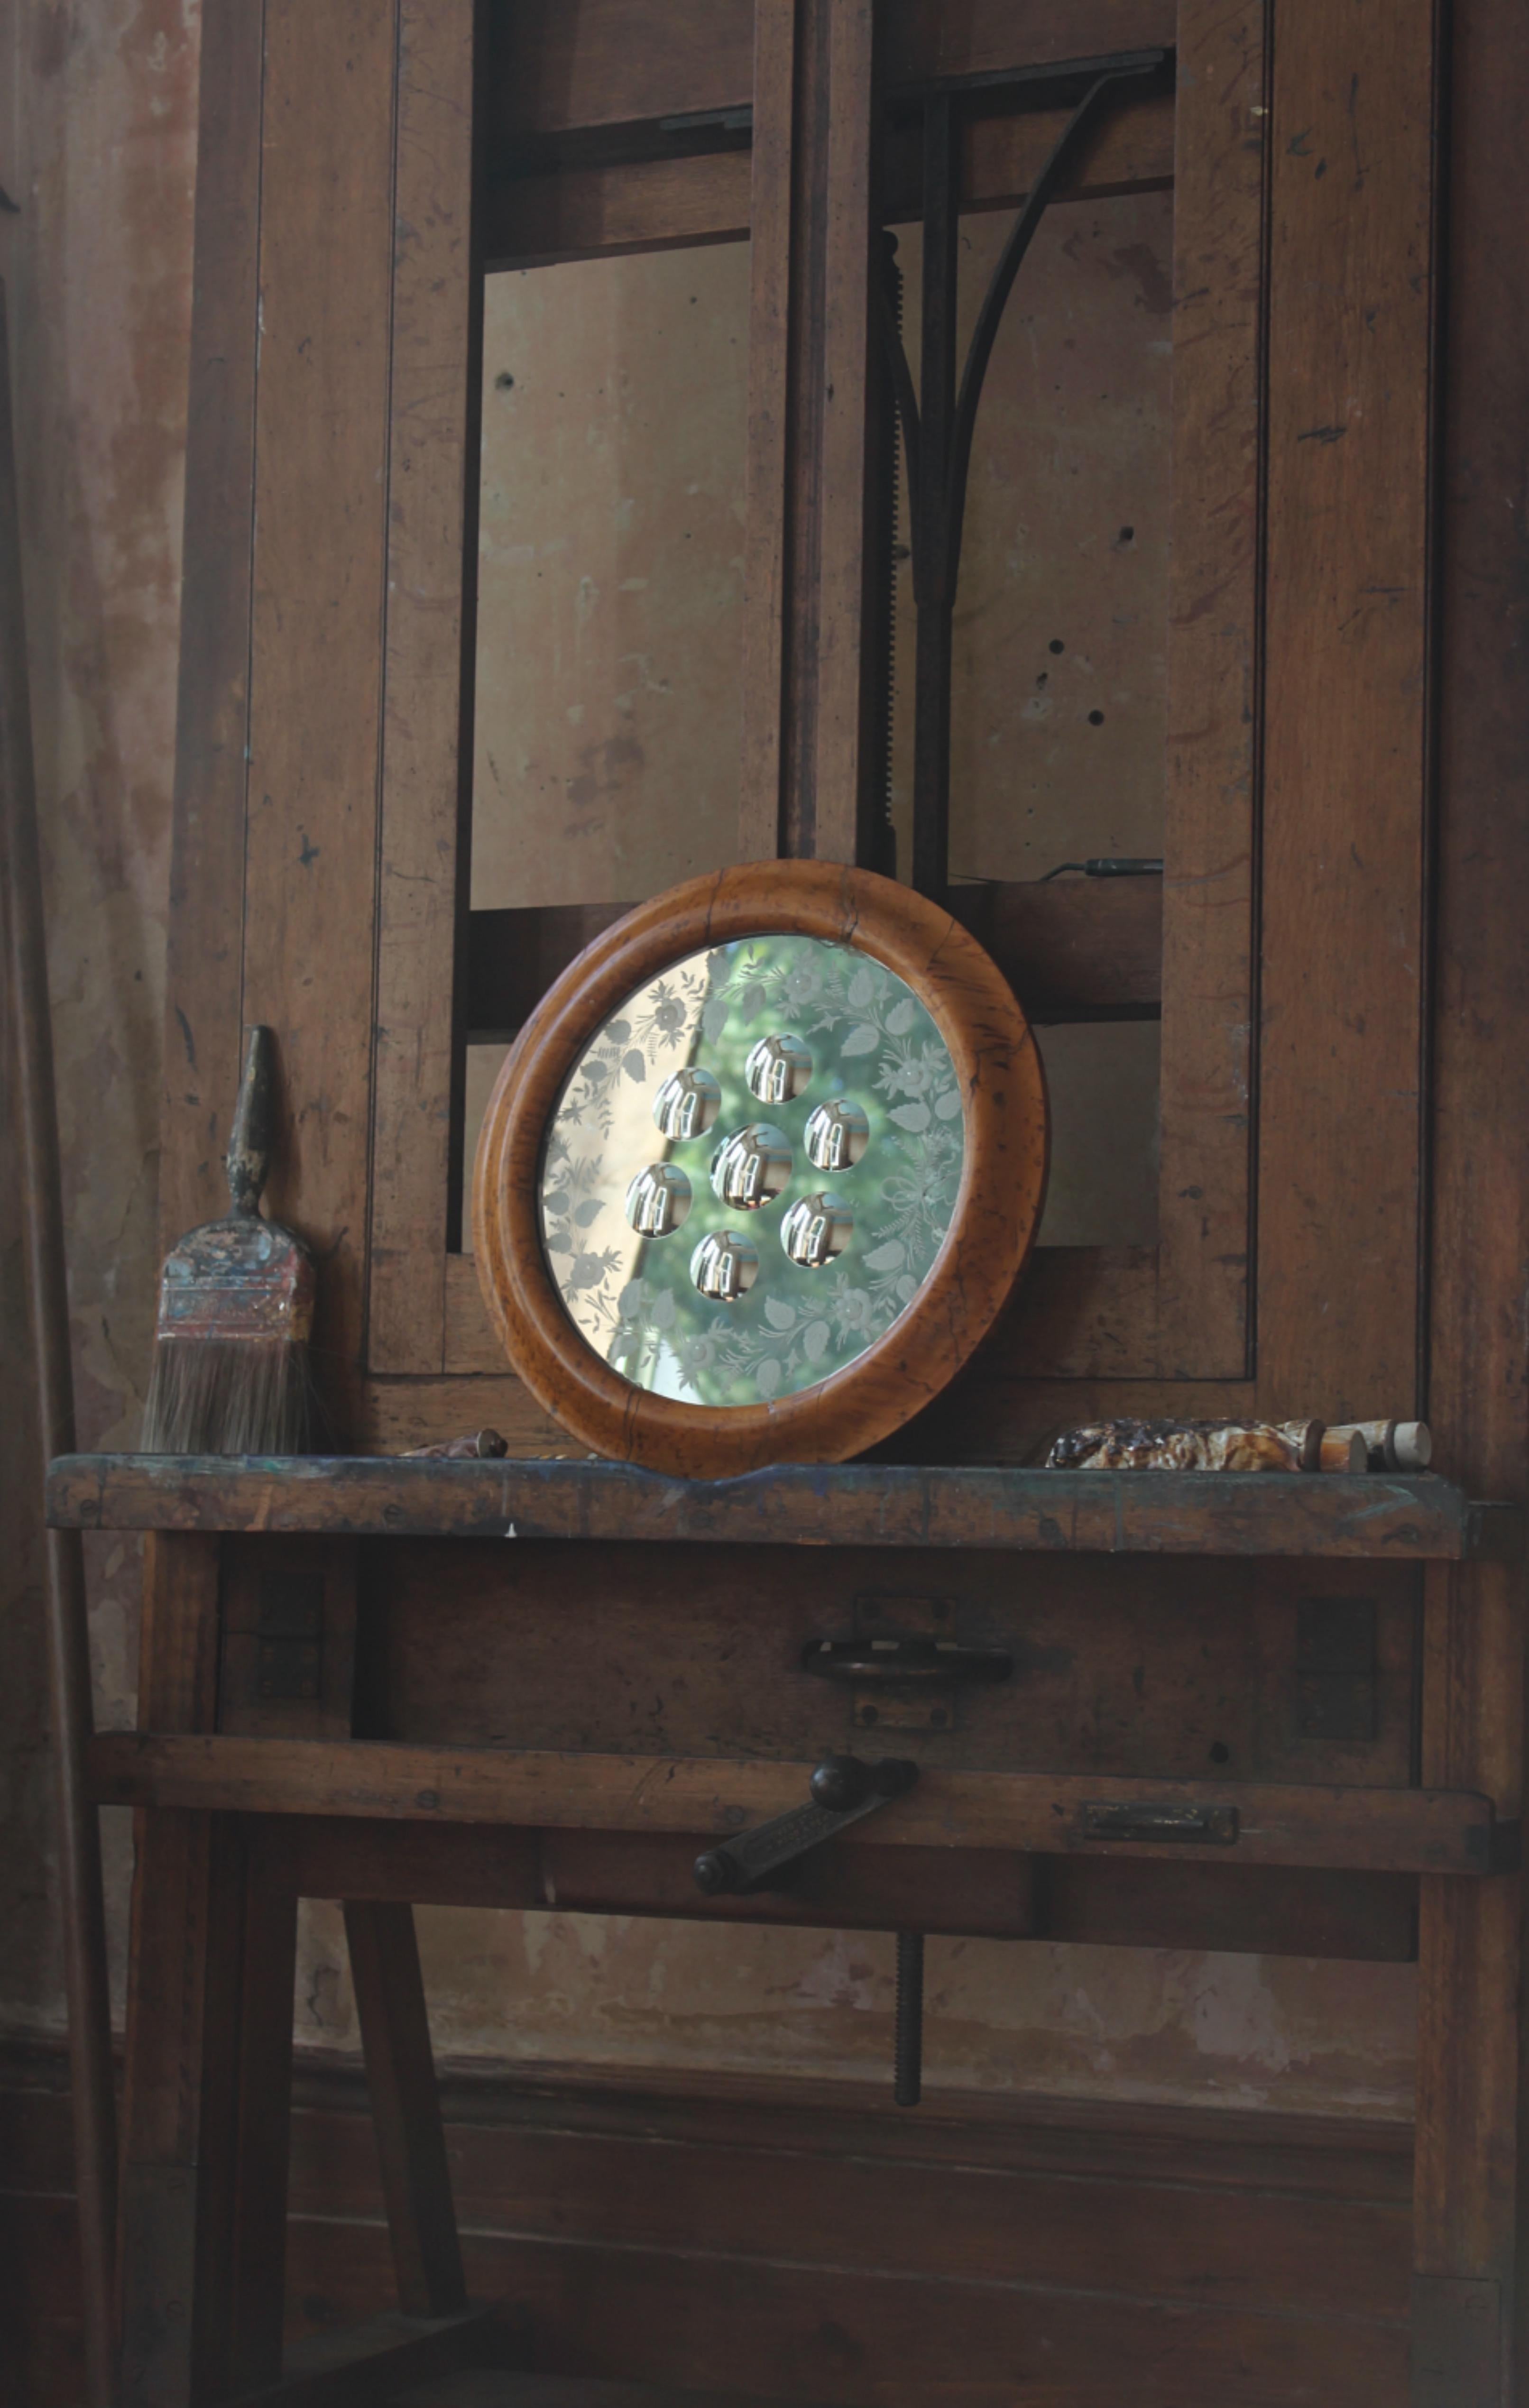 Un grand miroir de sorcière de la fin du XIXe siècle, logé dans un cadre ovale plaqué d'érable, avec sept optiques convexes à fond inversé. La partie extérieure du miroir est ornée d'un feuillage gravé à l'acide. 38 cm de diamètre.

Quelques petites